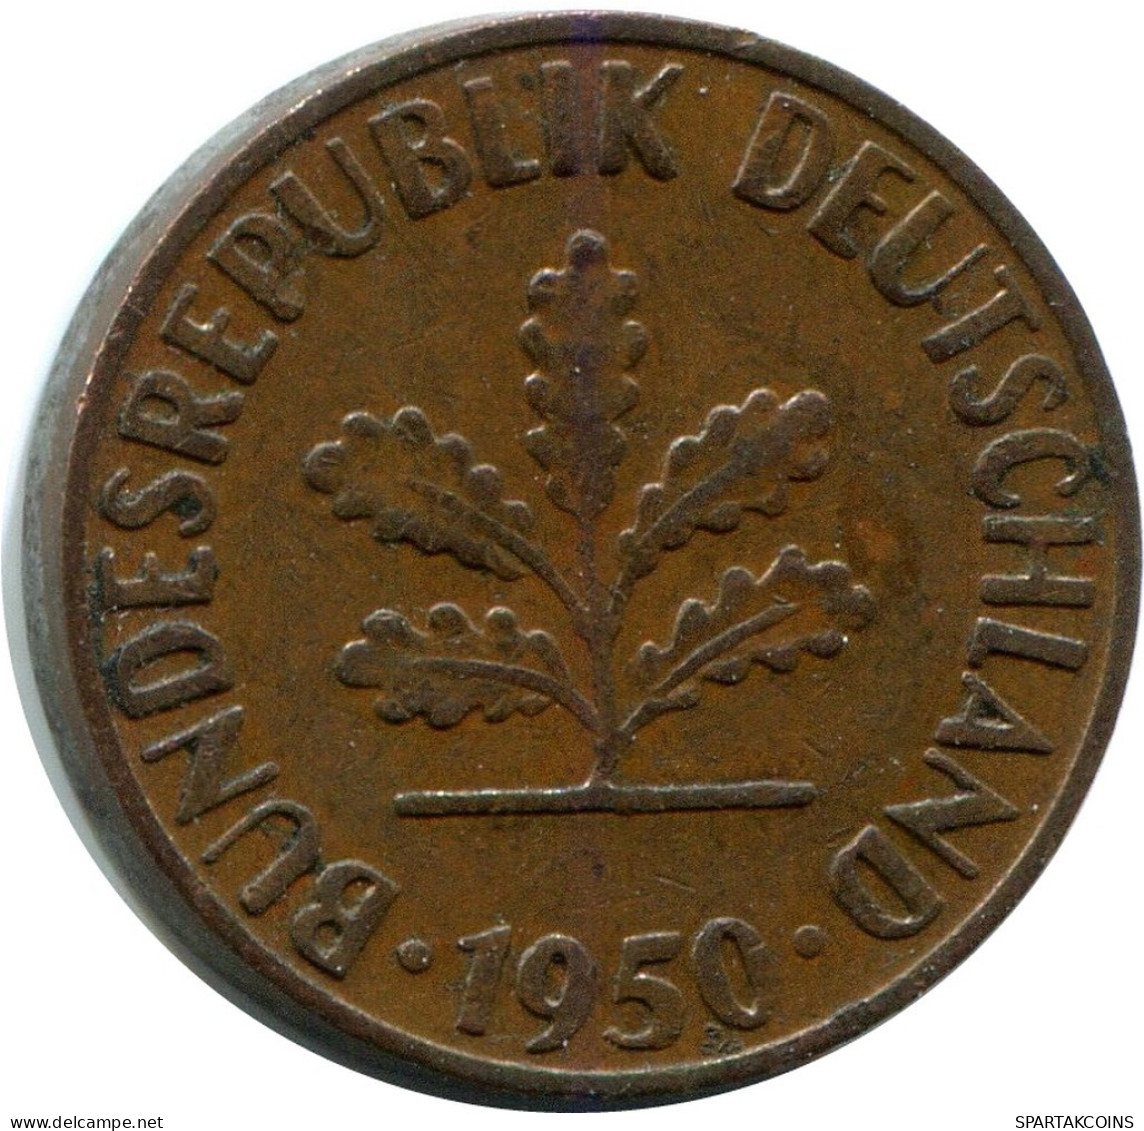 1 PFENNIG 1950 D BRD ALEMANIA Moneda GERMANY #DB822.E.A - 1 Pfennig